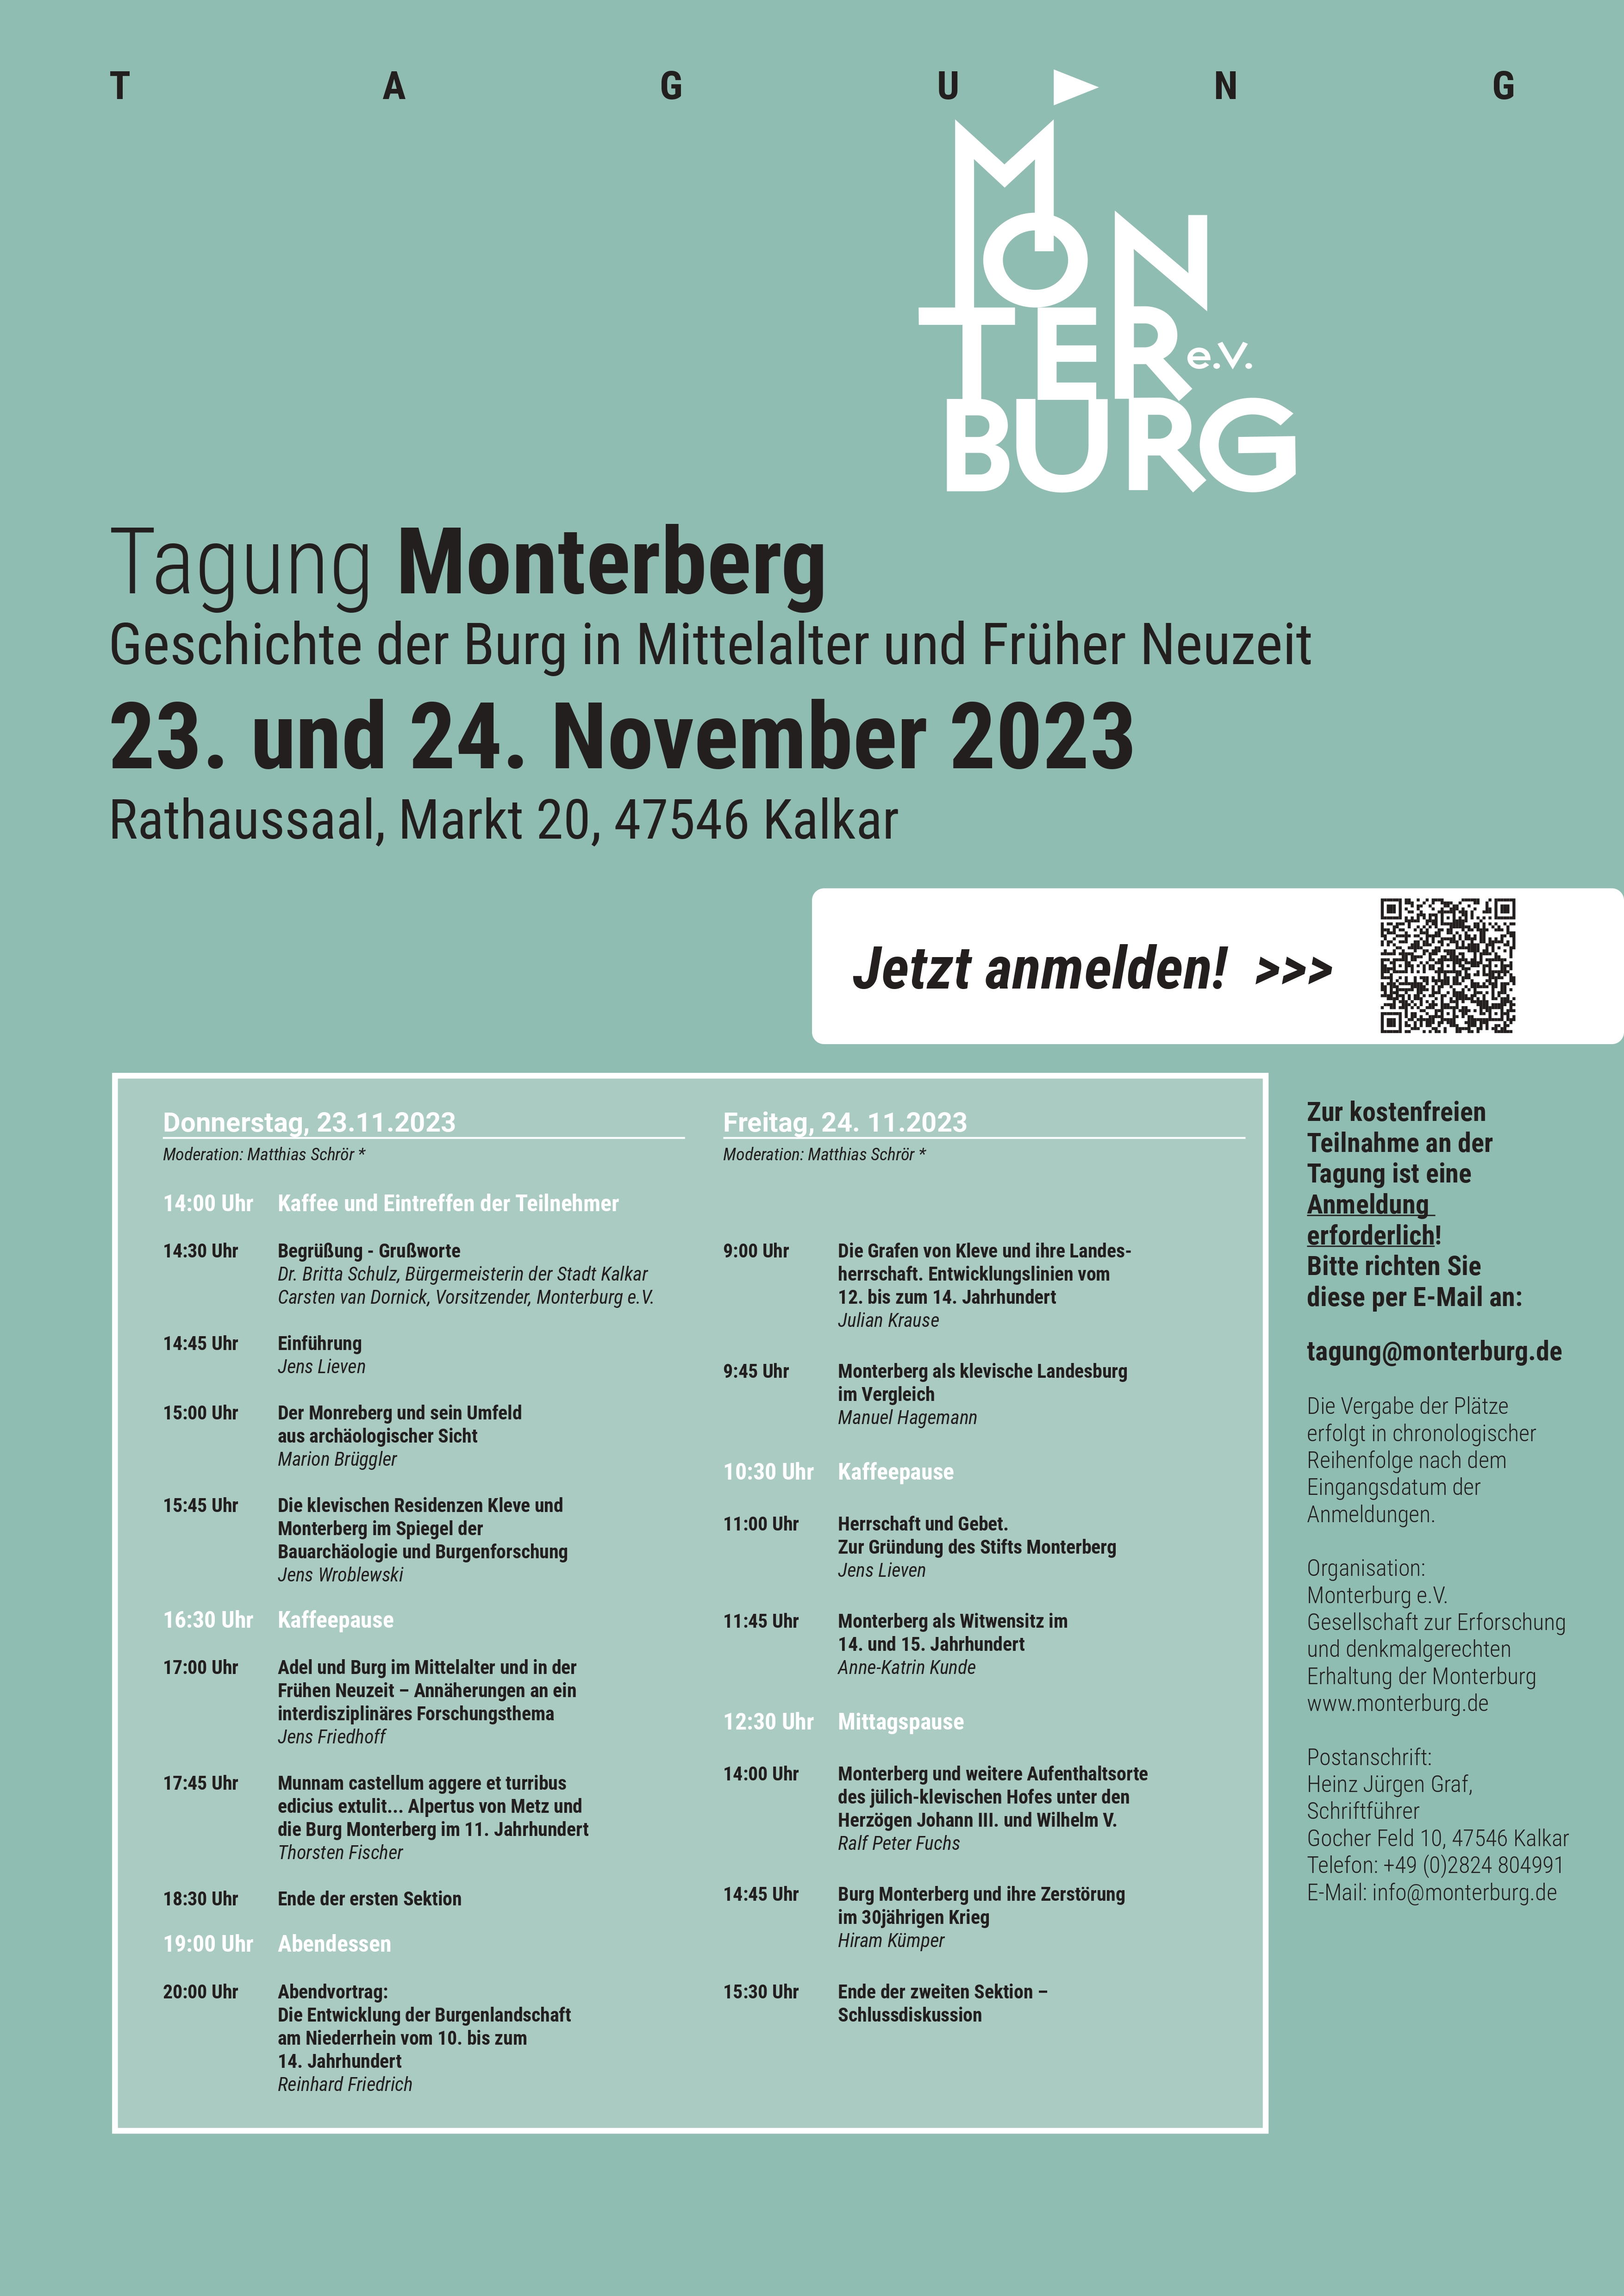 Tagung Monterburg November 2023